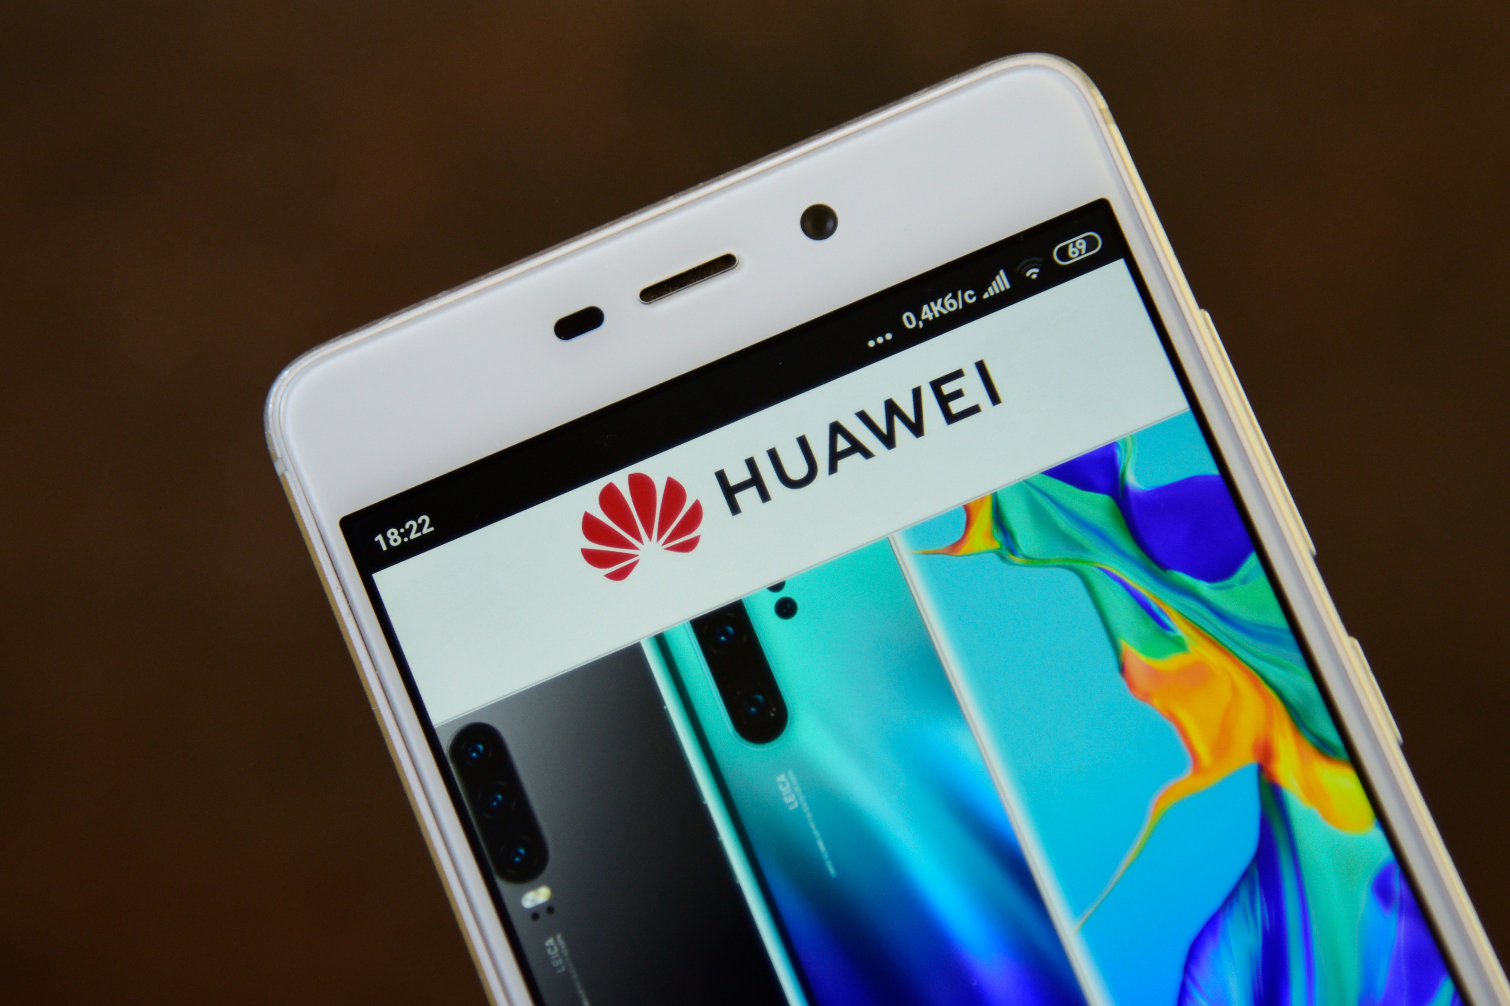 Хуавей device co. Huawei device co телефон. Huawei со всех сторон экран. Huawei device co Ltd 2018.